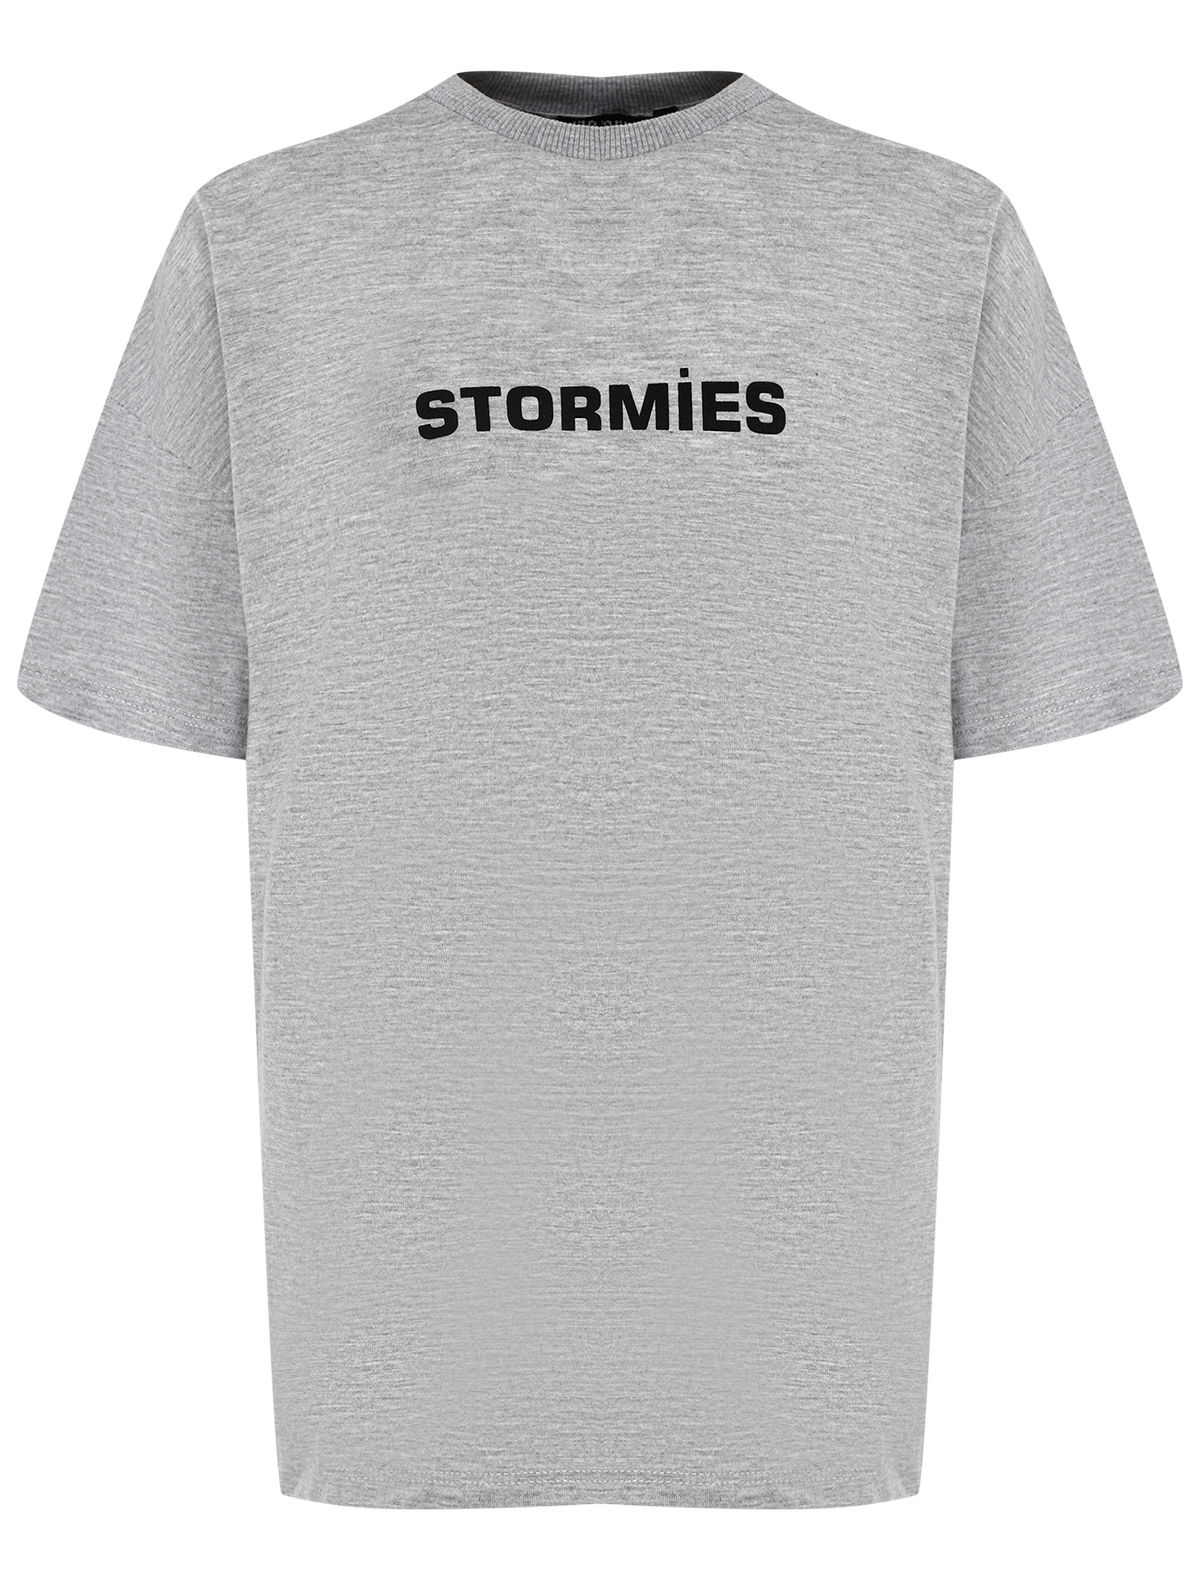 Футболка Stormies 2615498, цвет серый, размер 9